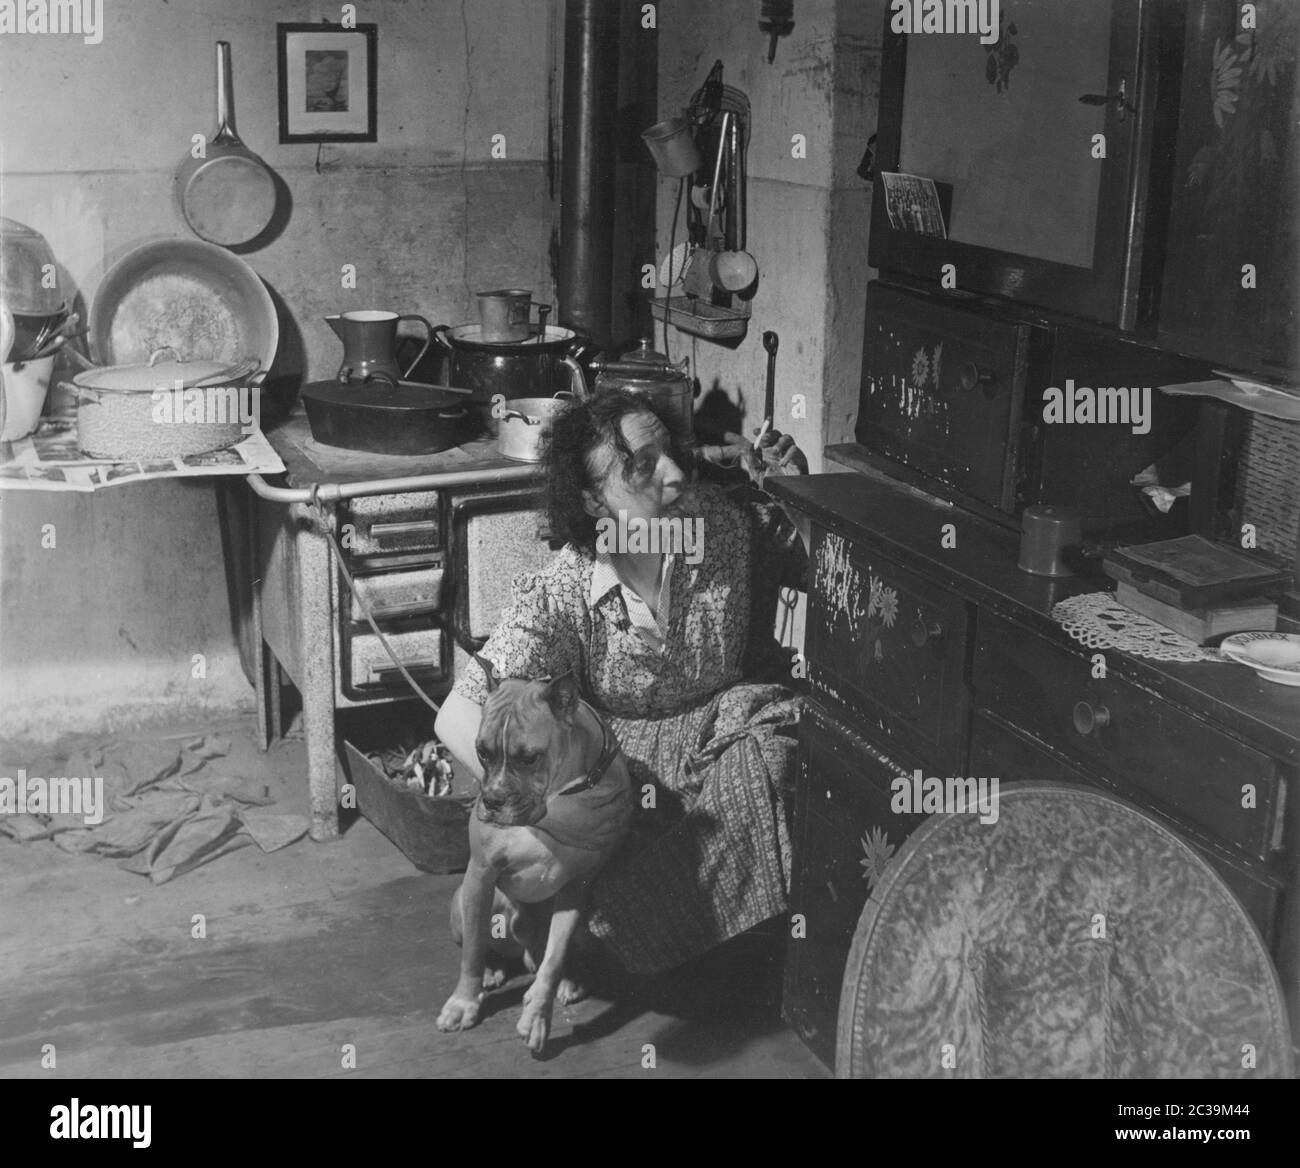 Eine rauchende Frau in der Schürze einer traditionellen Hausfrau in einer altmodischen Küche hält eine Bulldogge in ihren Armen. Undatierte Aufnahme. Stockfoto